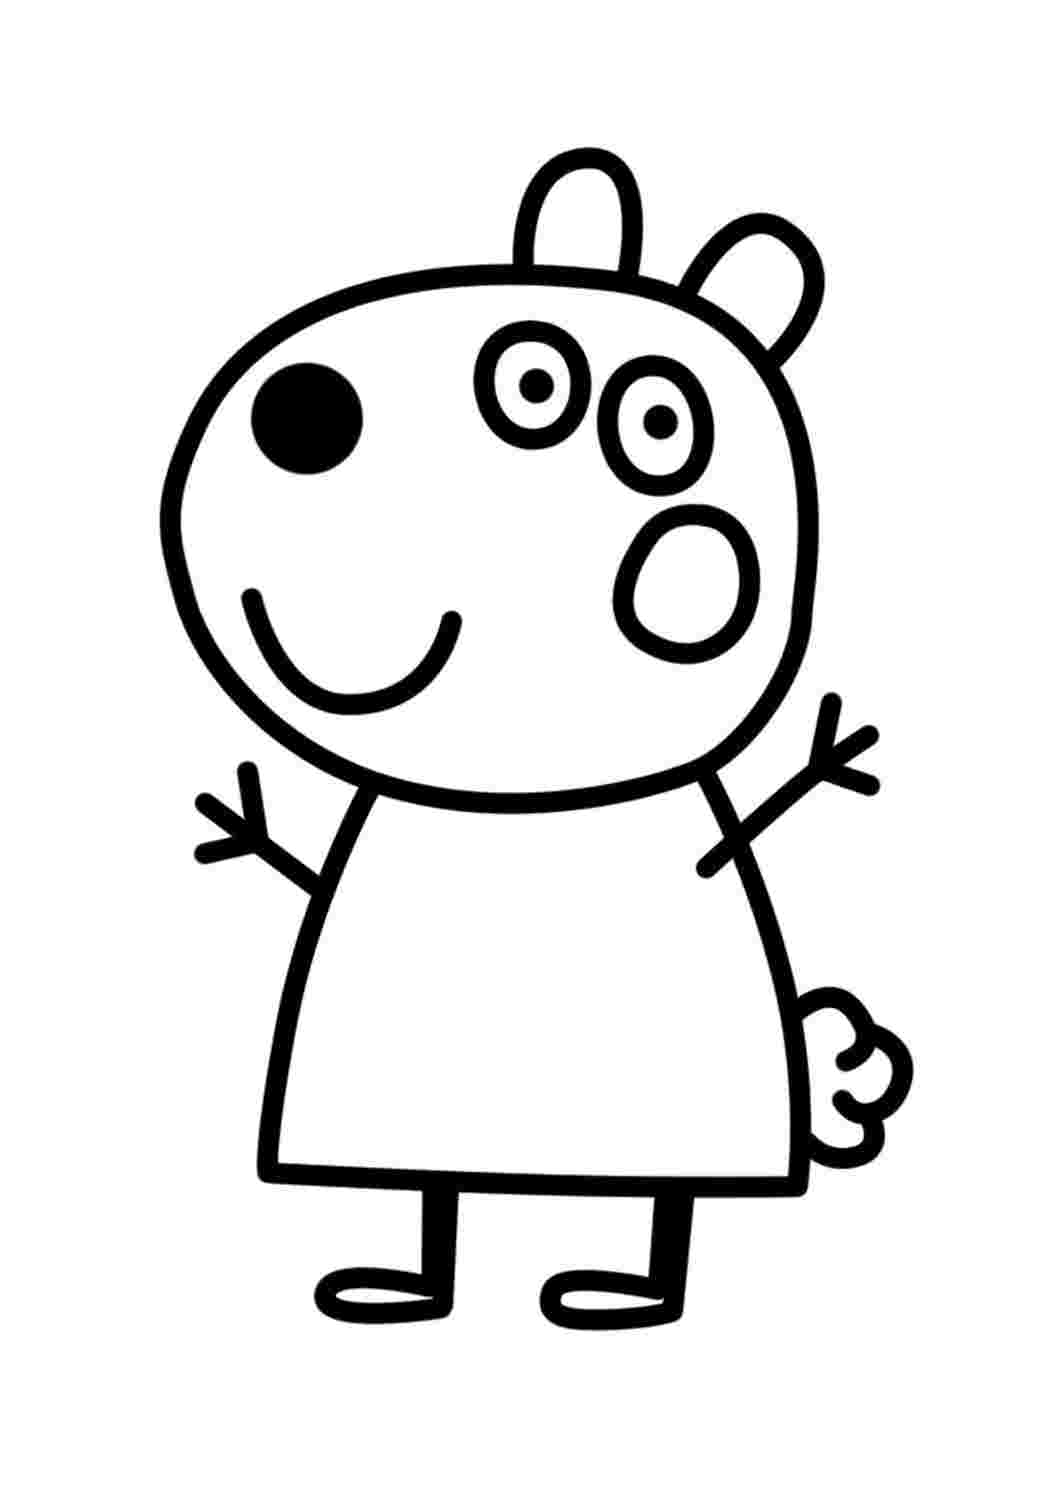 Свинка Пеппа раскраска для детей 2-3 лет